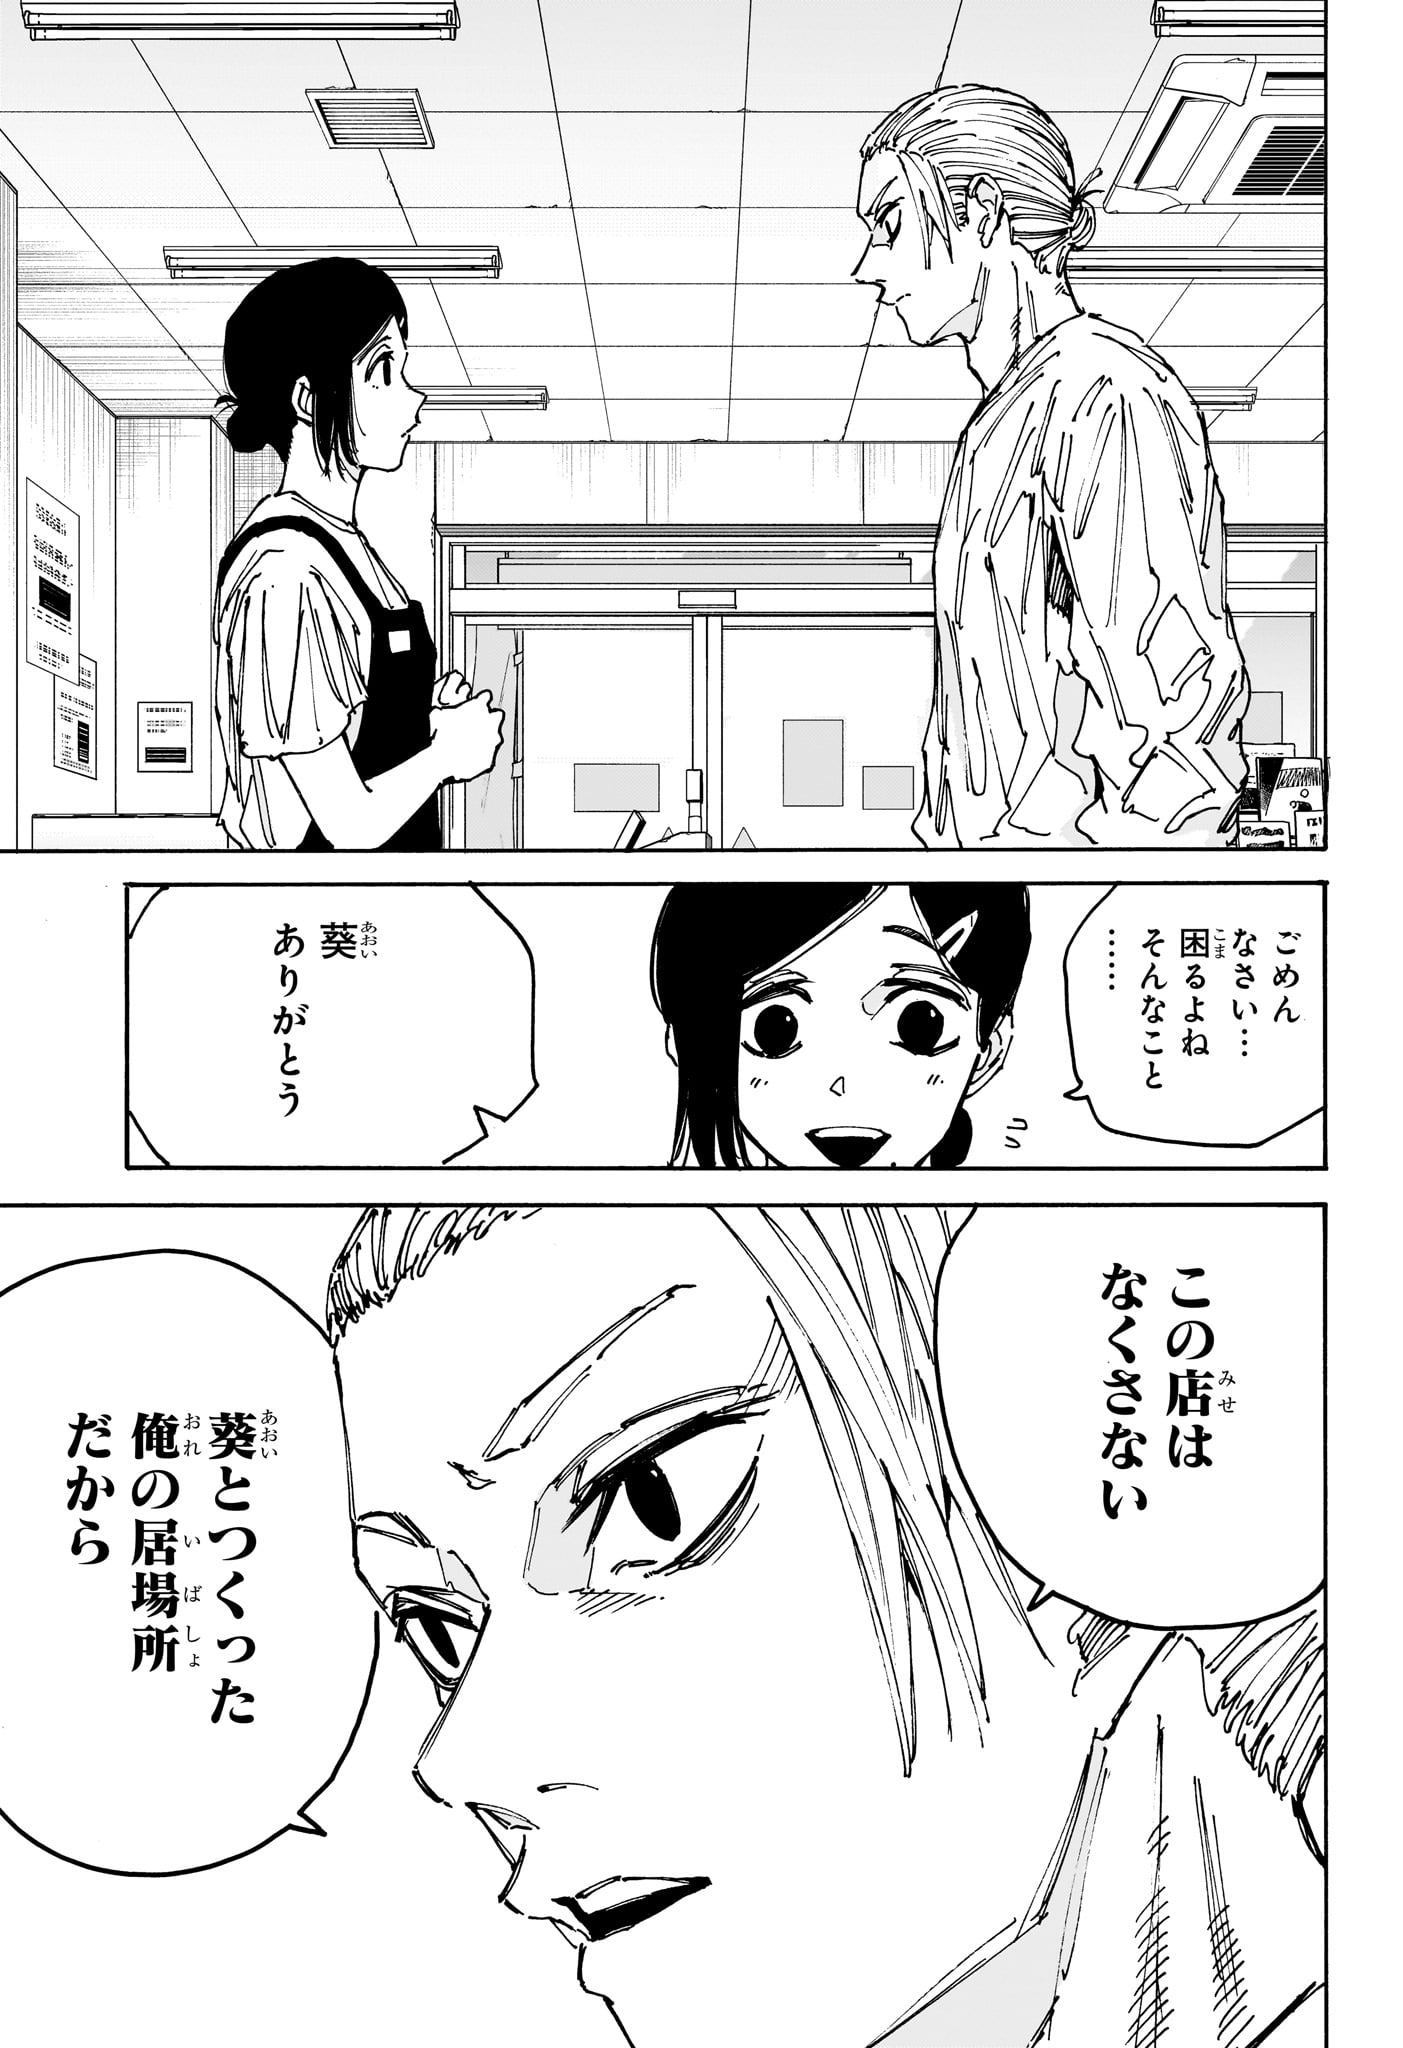 Sakamoto Days - Chapter 171 - Page 13